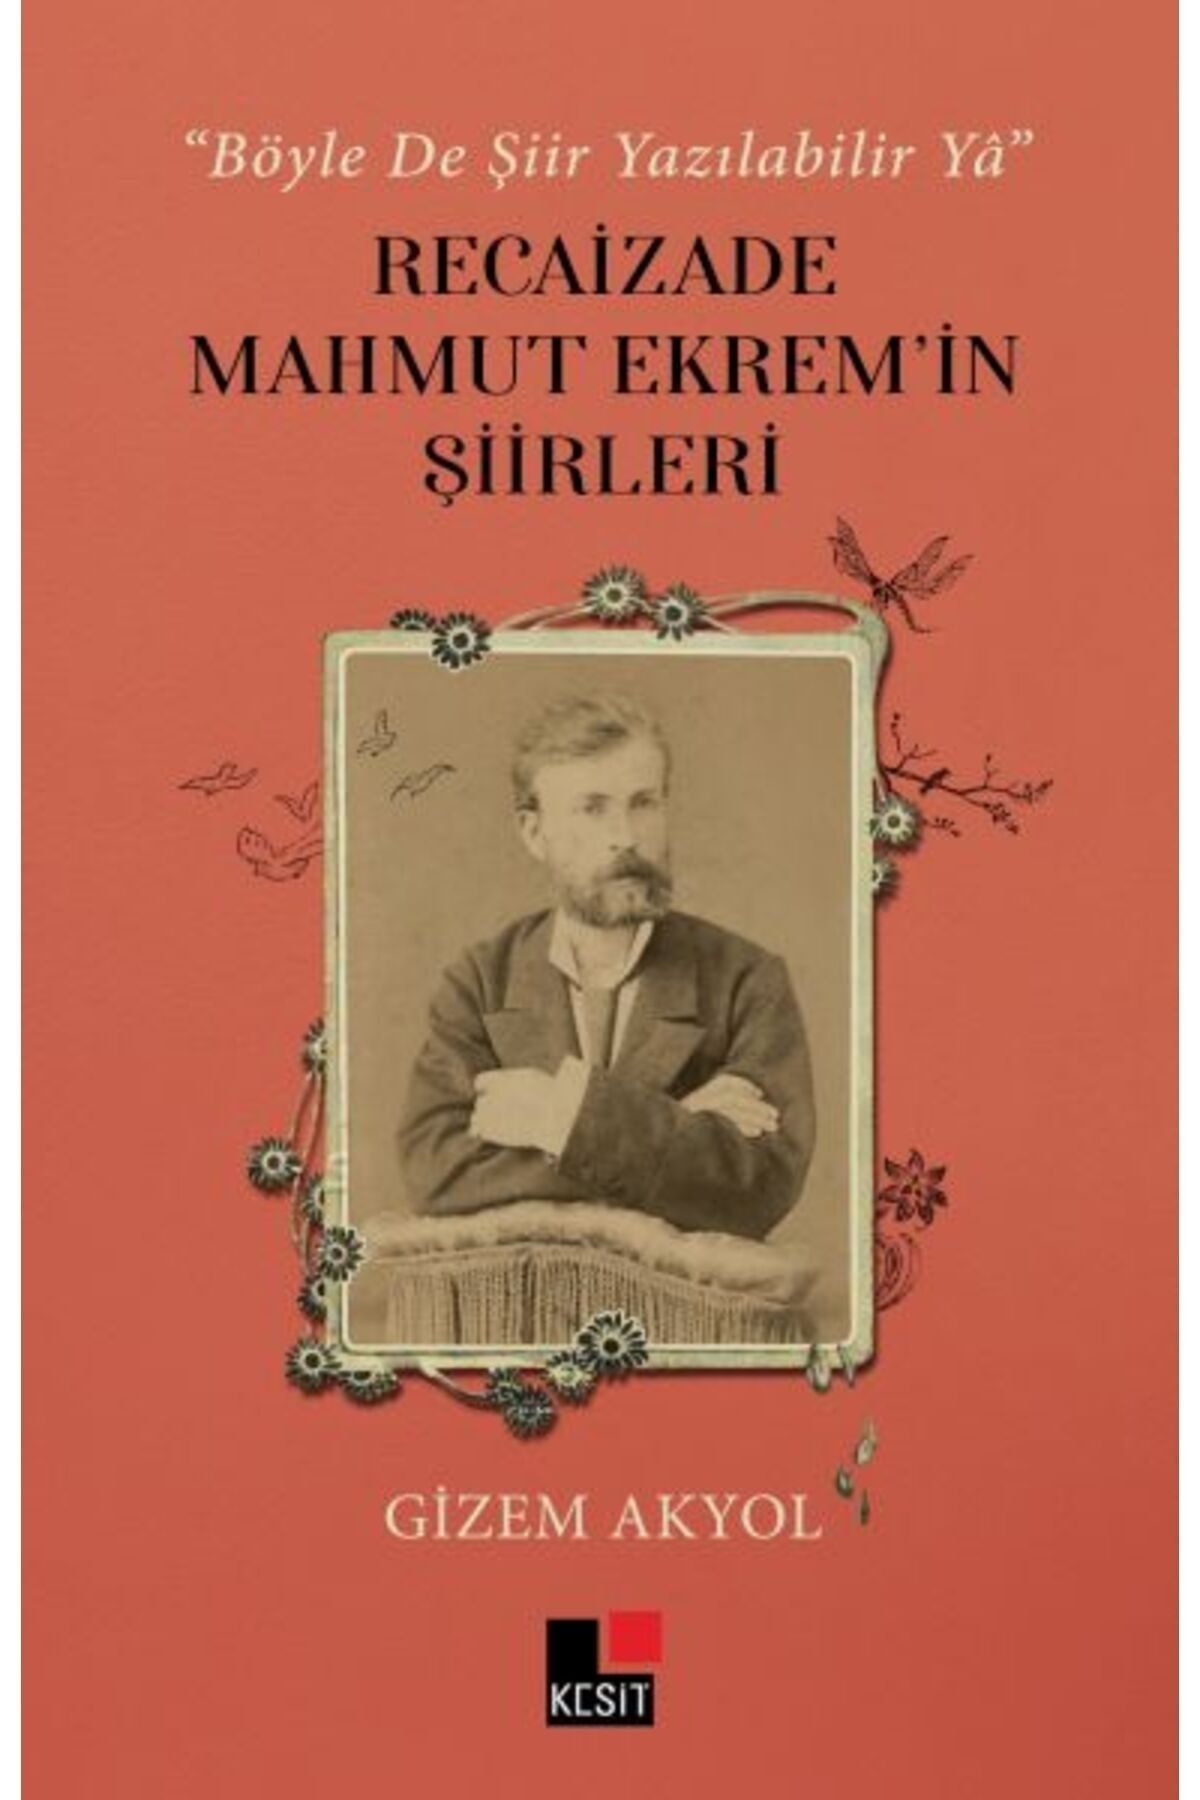 Kesit Yayınları Böyle De Şiir Yazılabilir Yâ Recaizade Mahmut Ekrem in Şiirleri